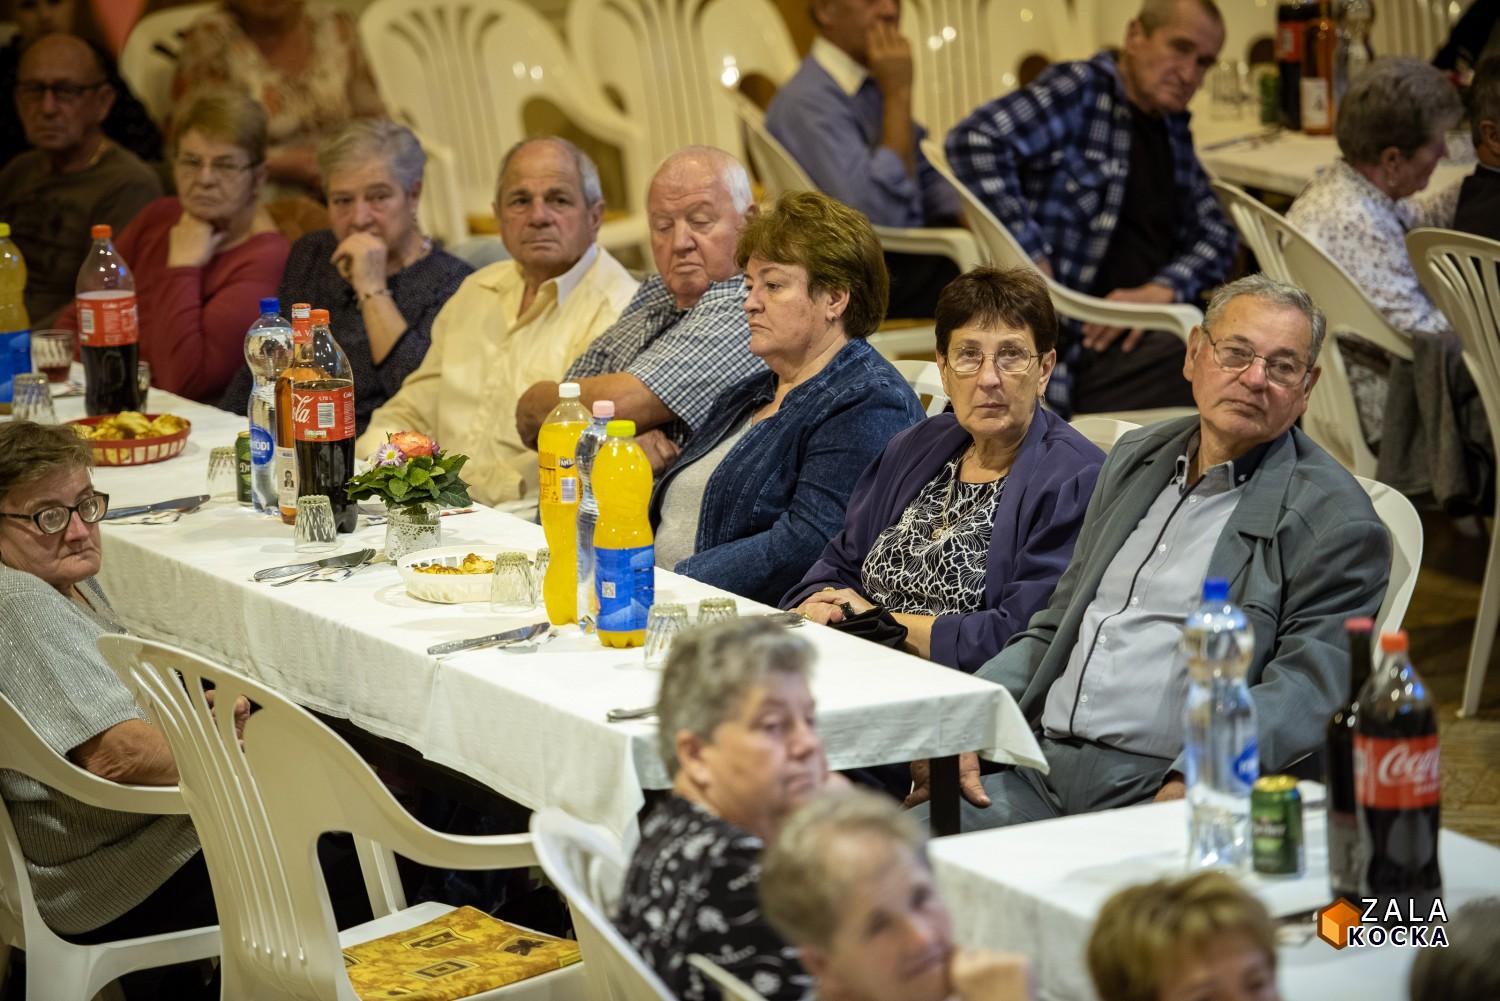 Az időseknek kulcsszerepe van a magyar hagyományok továbbadásában